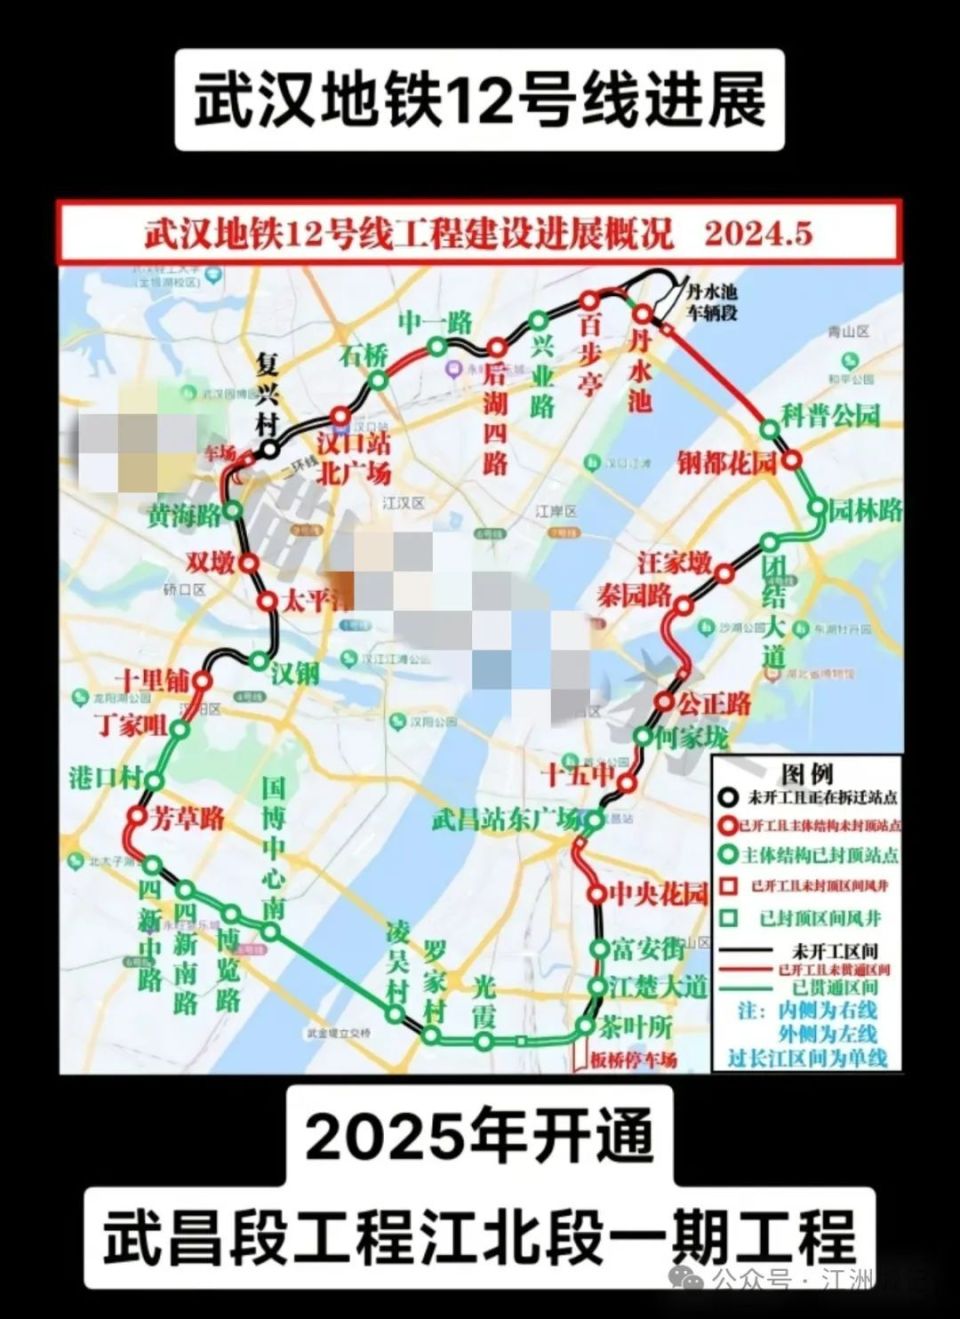 武汉地铁12号线进展:武昌段,汉阳段2025年底有望开通!